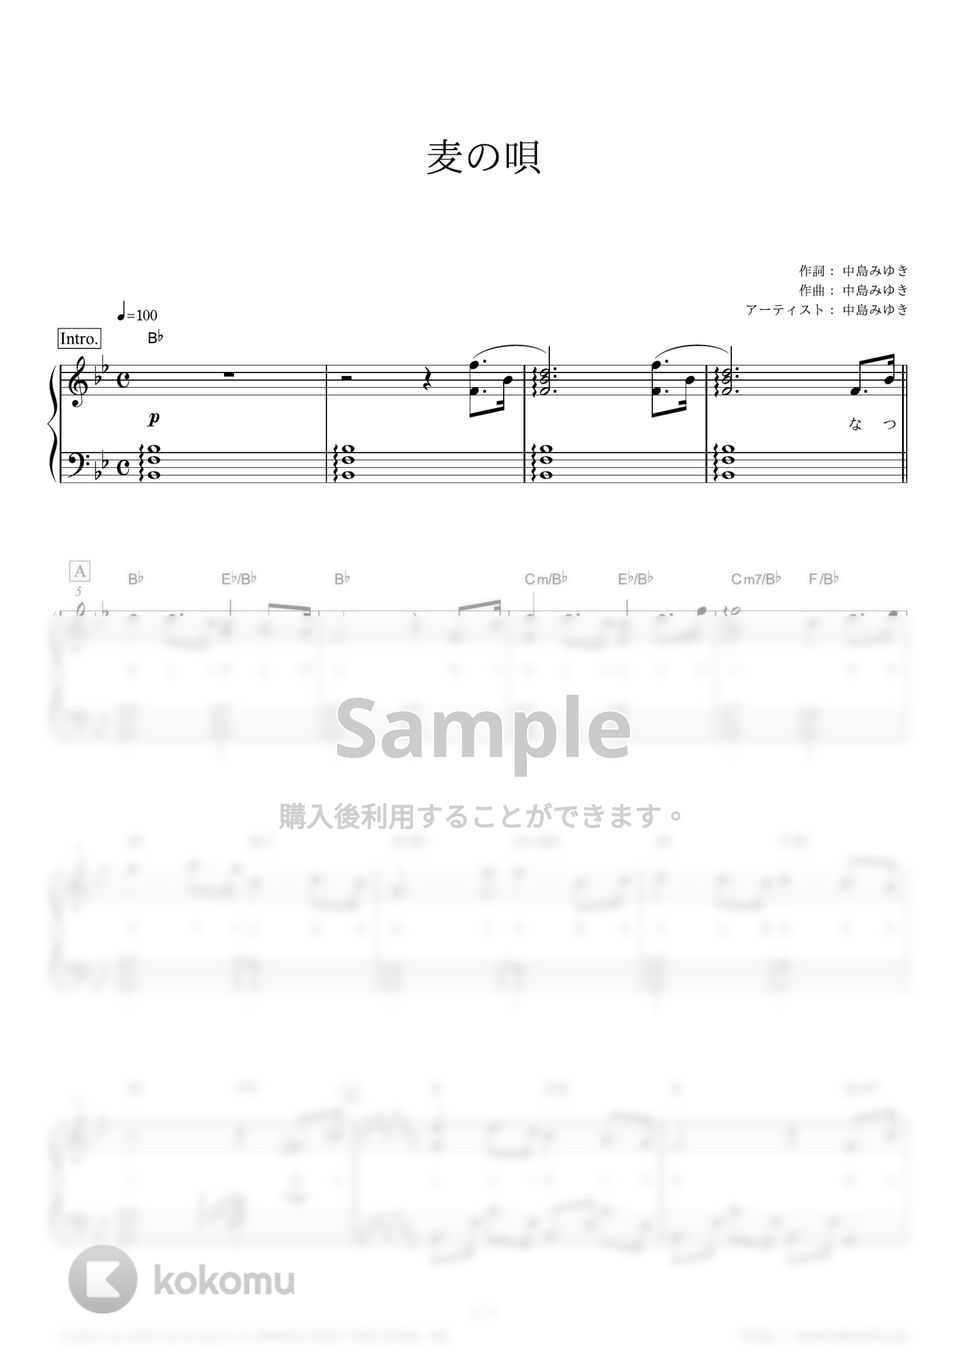 中島みゆき - 麦の唄 (NHK連続テレビ小説『マッサン』主題歌) by ピアノの本棚